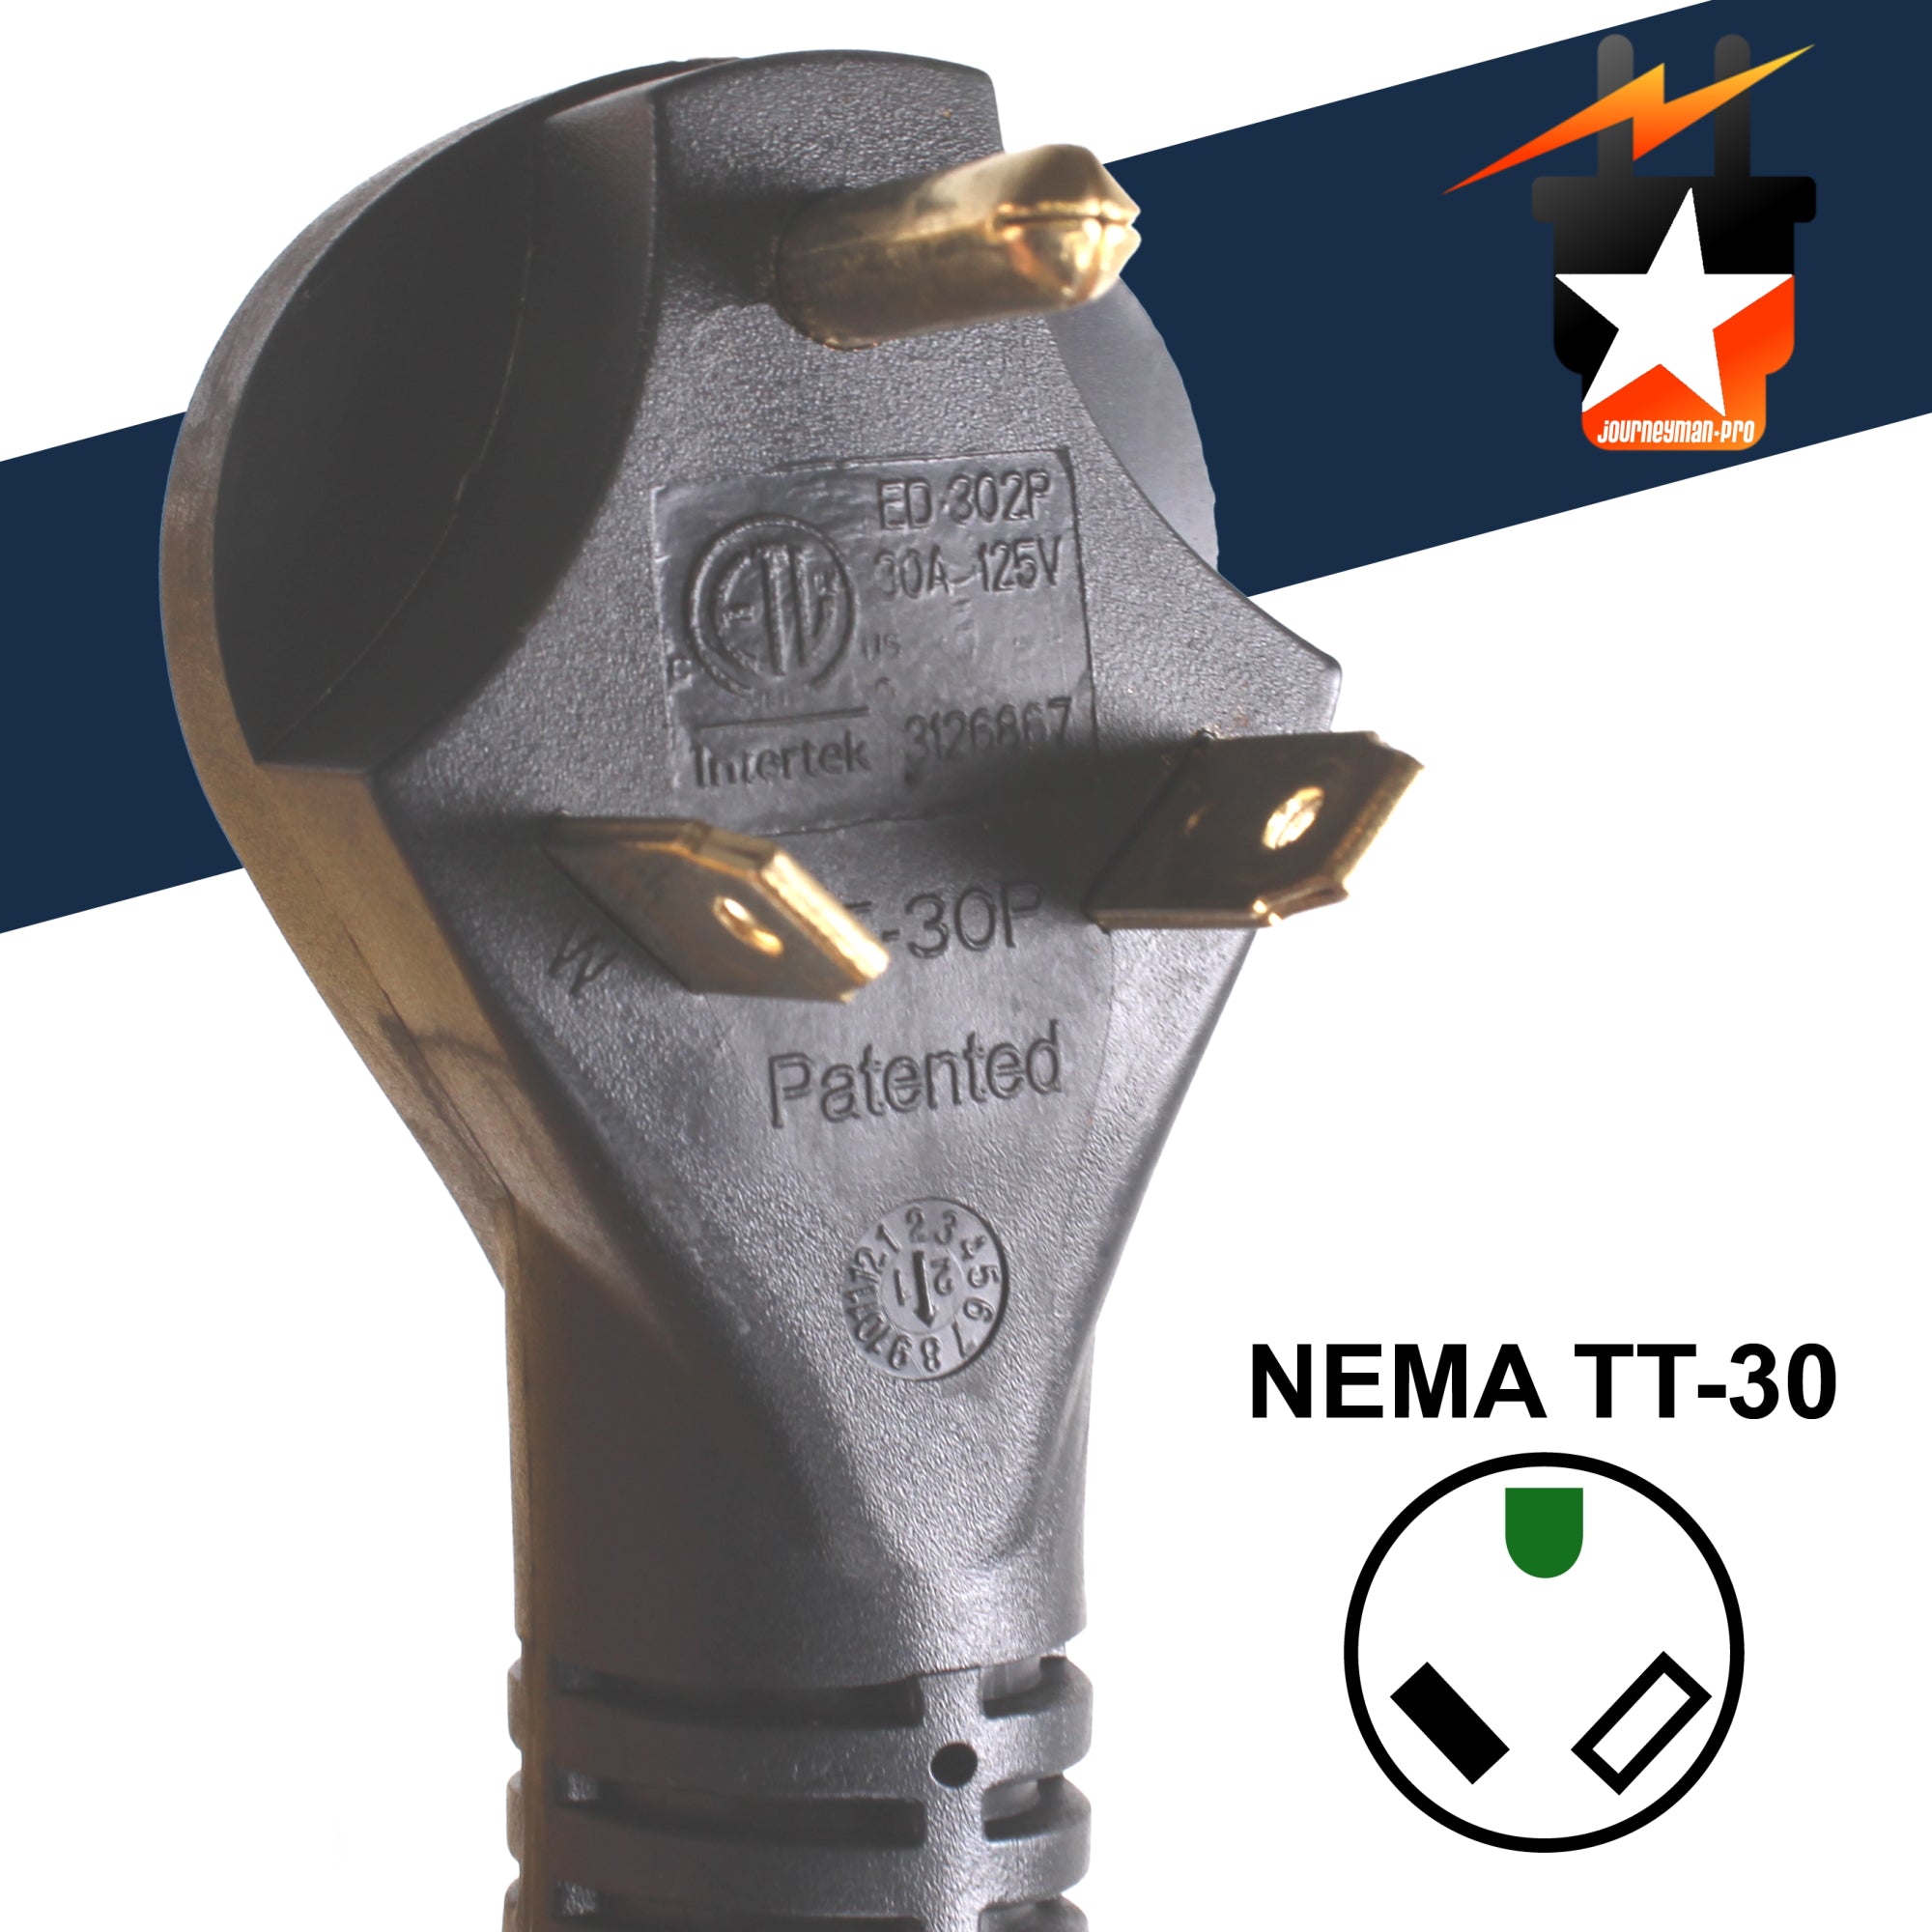 NEMA TT-30P/L5-30R 125V 30A RV Power Extension Cord w/ Twist Lock